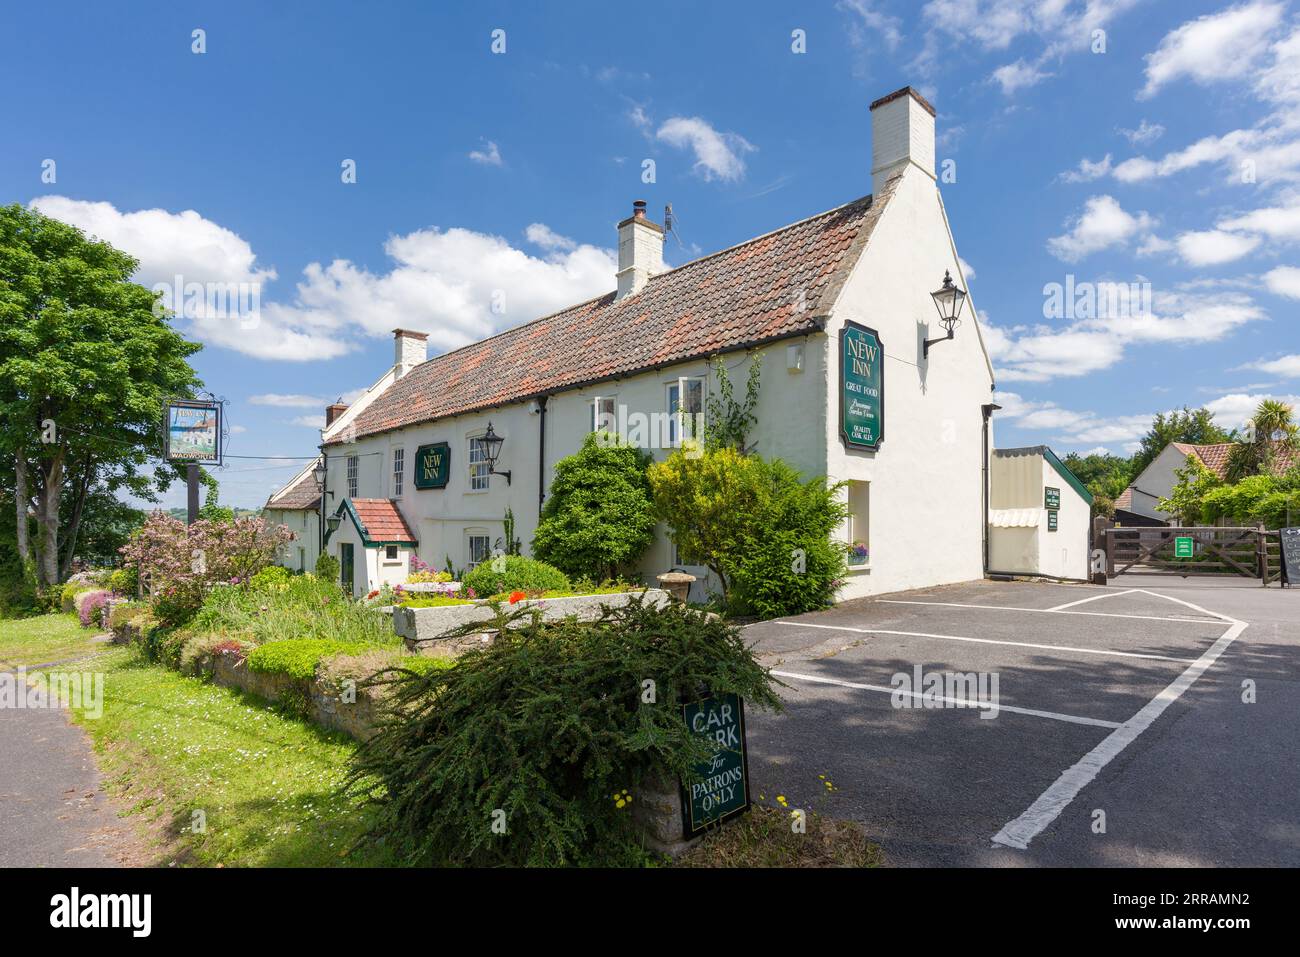 La maison publique New Inn dans le village de Blagdon dans le paysage national de Mendip Hills North Devon Coast, North Somerset, Angleterre. Banque D'Images